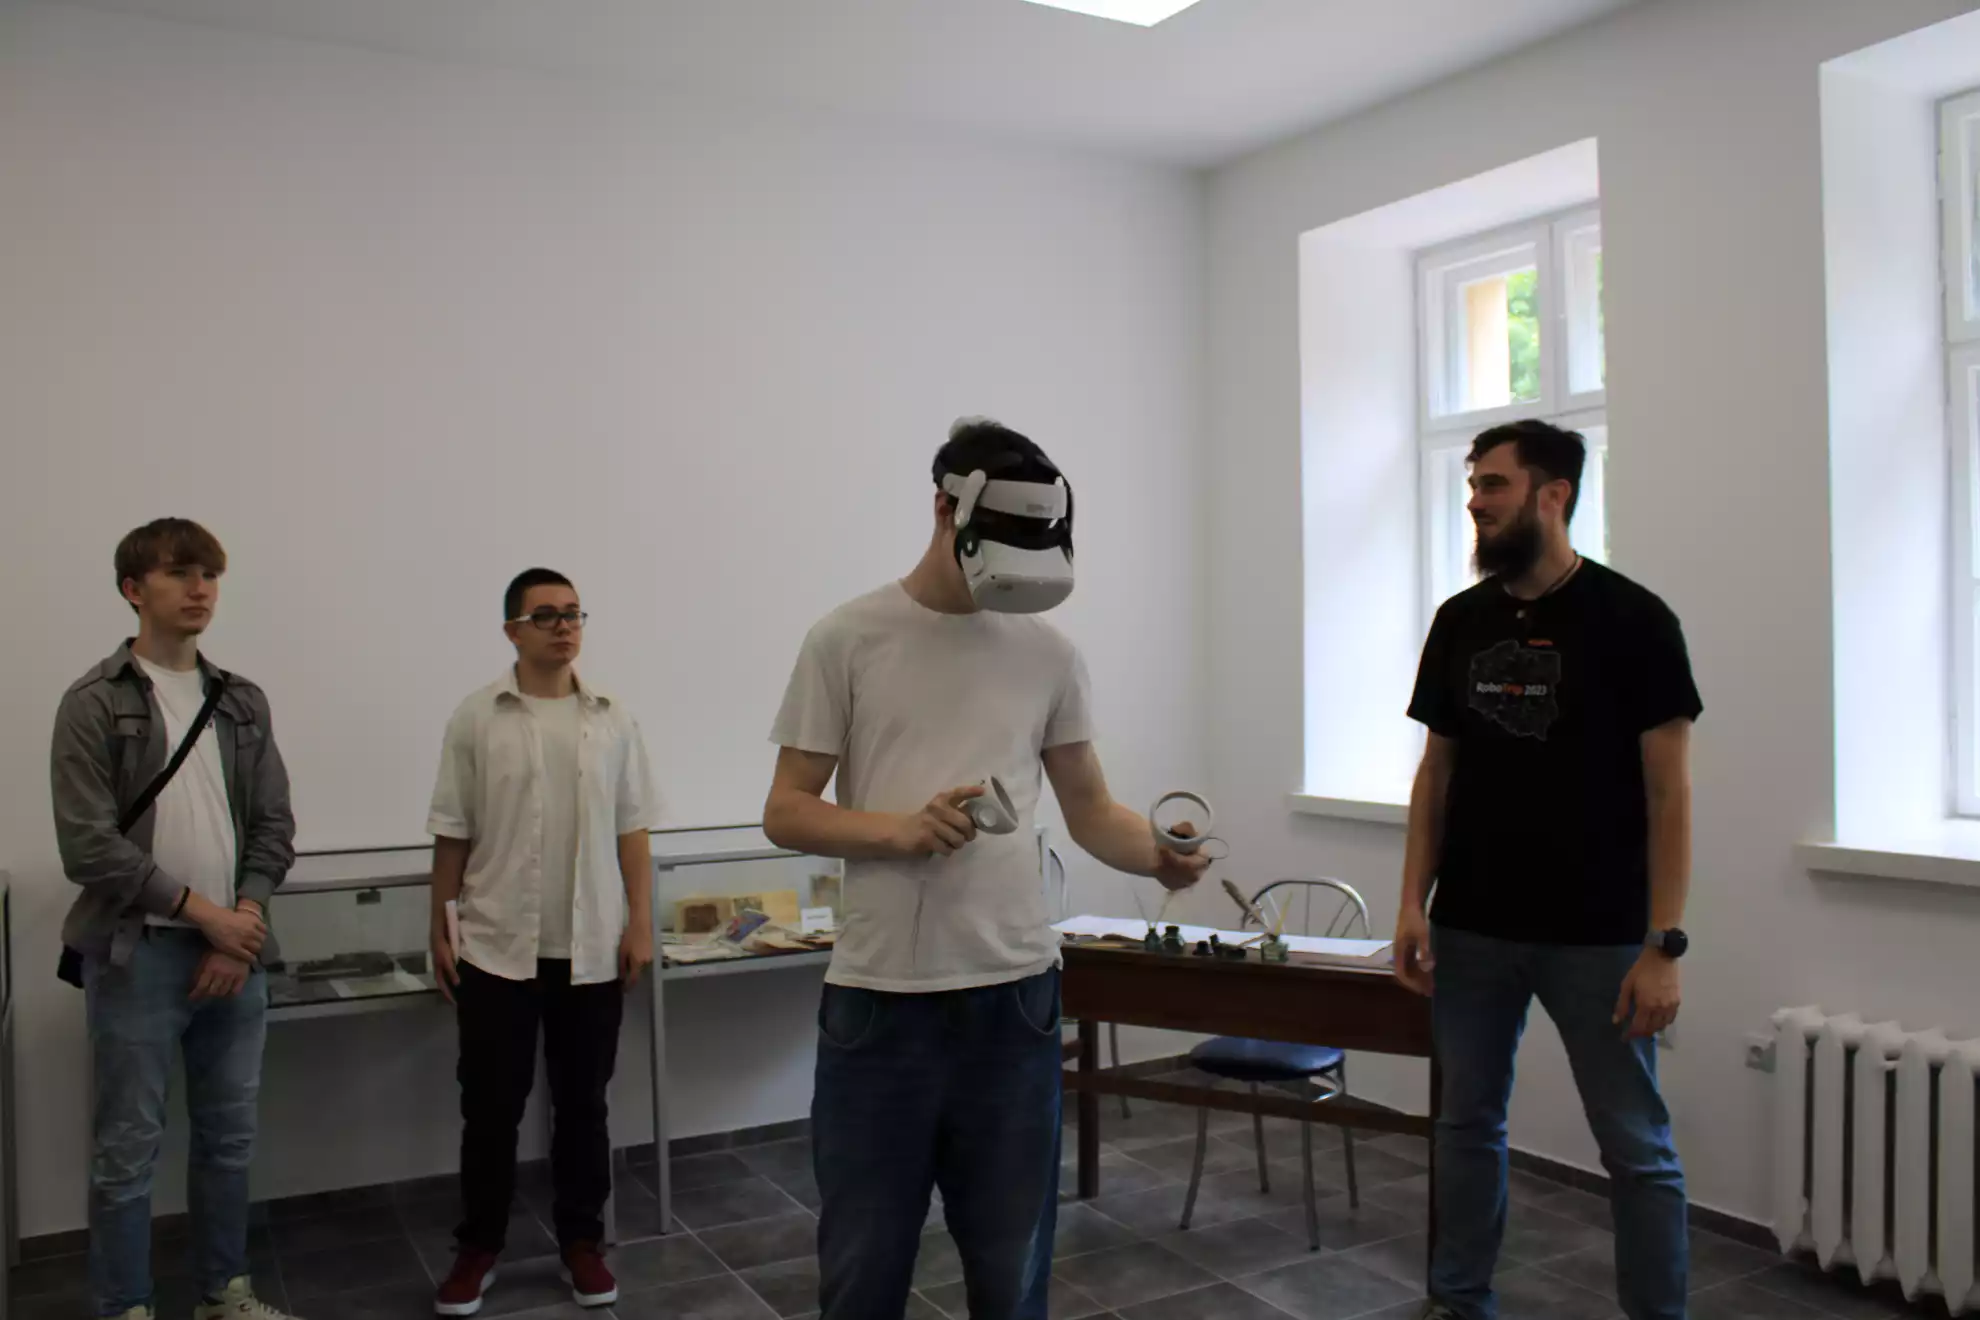 Uczestnik festiwalu w obecności dwóch kolegów i przedstawiciela WSSE zapoznaje się z technologią VR - powiększenie